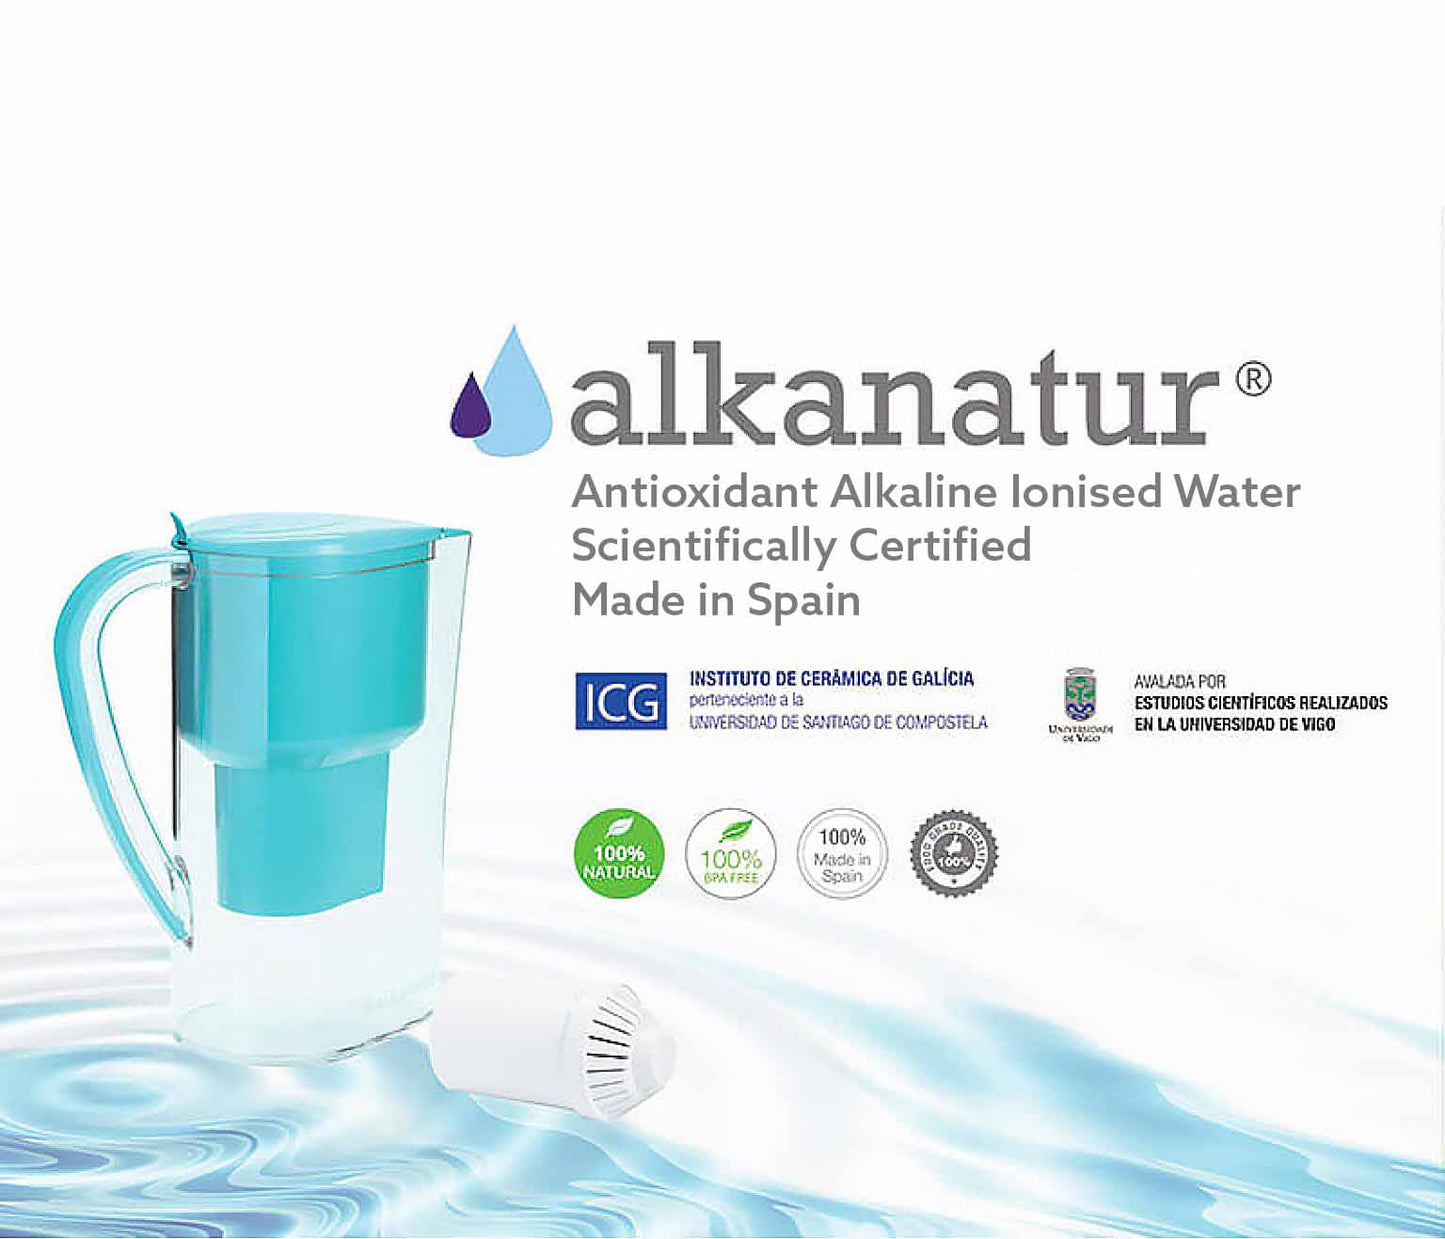 Alkanatur - Experts in Alkaline Antioxidant Water — Water Land